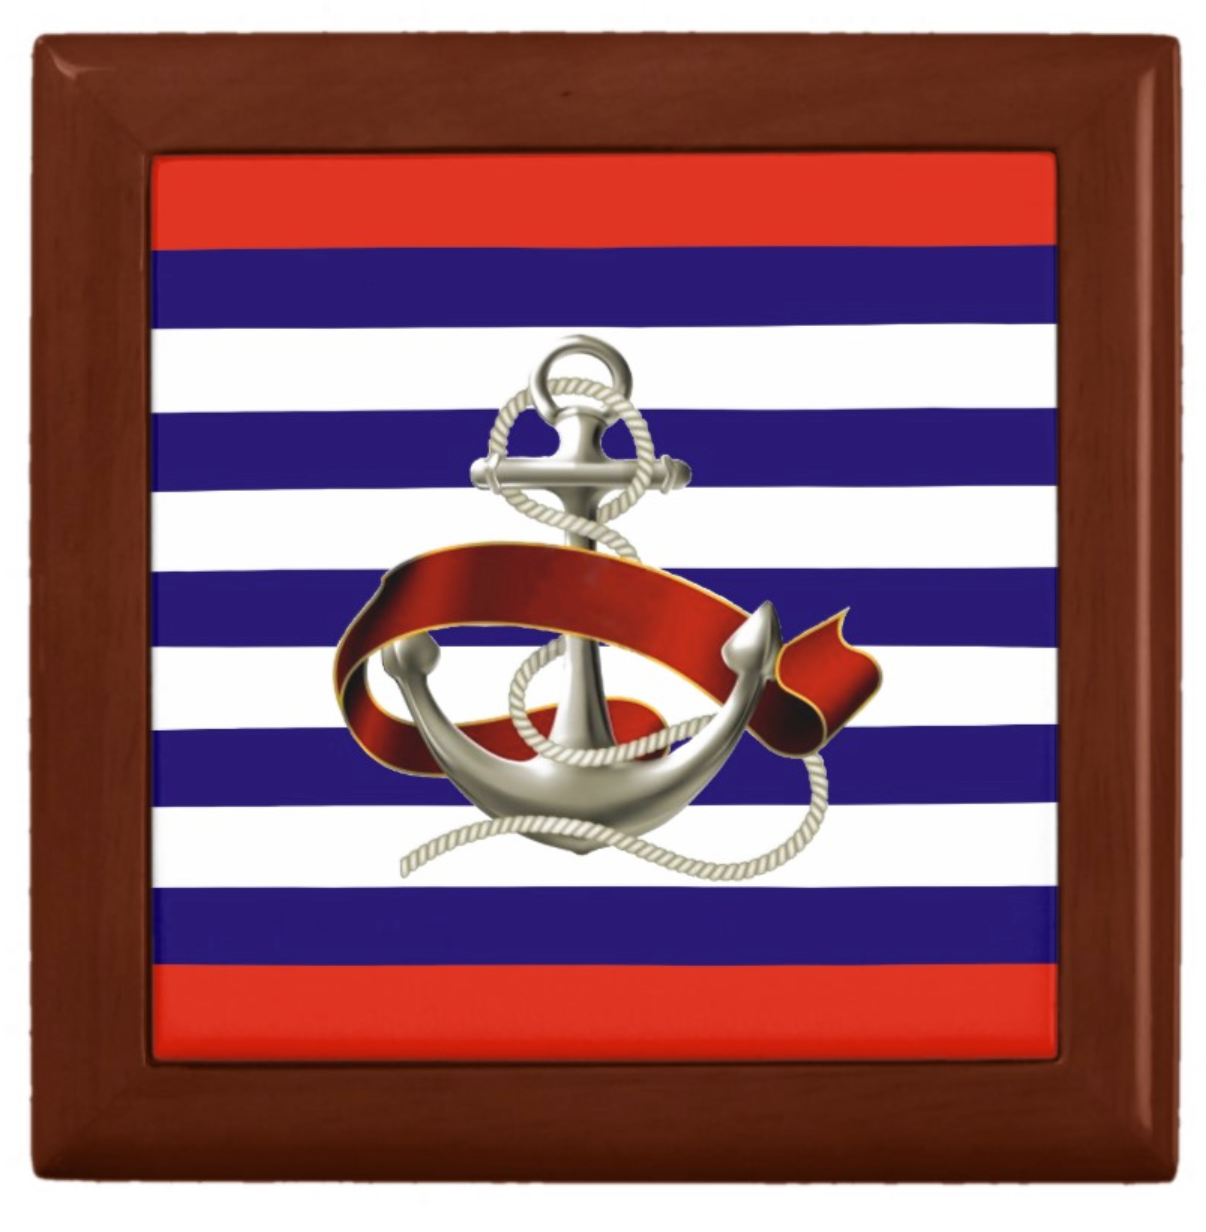 Keepsake/Jewelry Box - Nautical Anchor Design - Mahogany Box